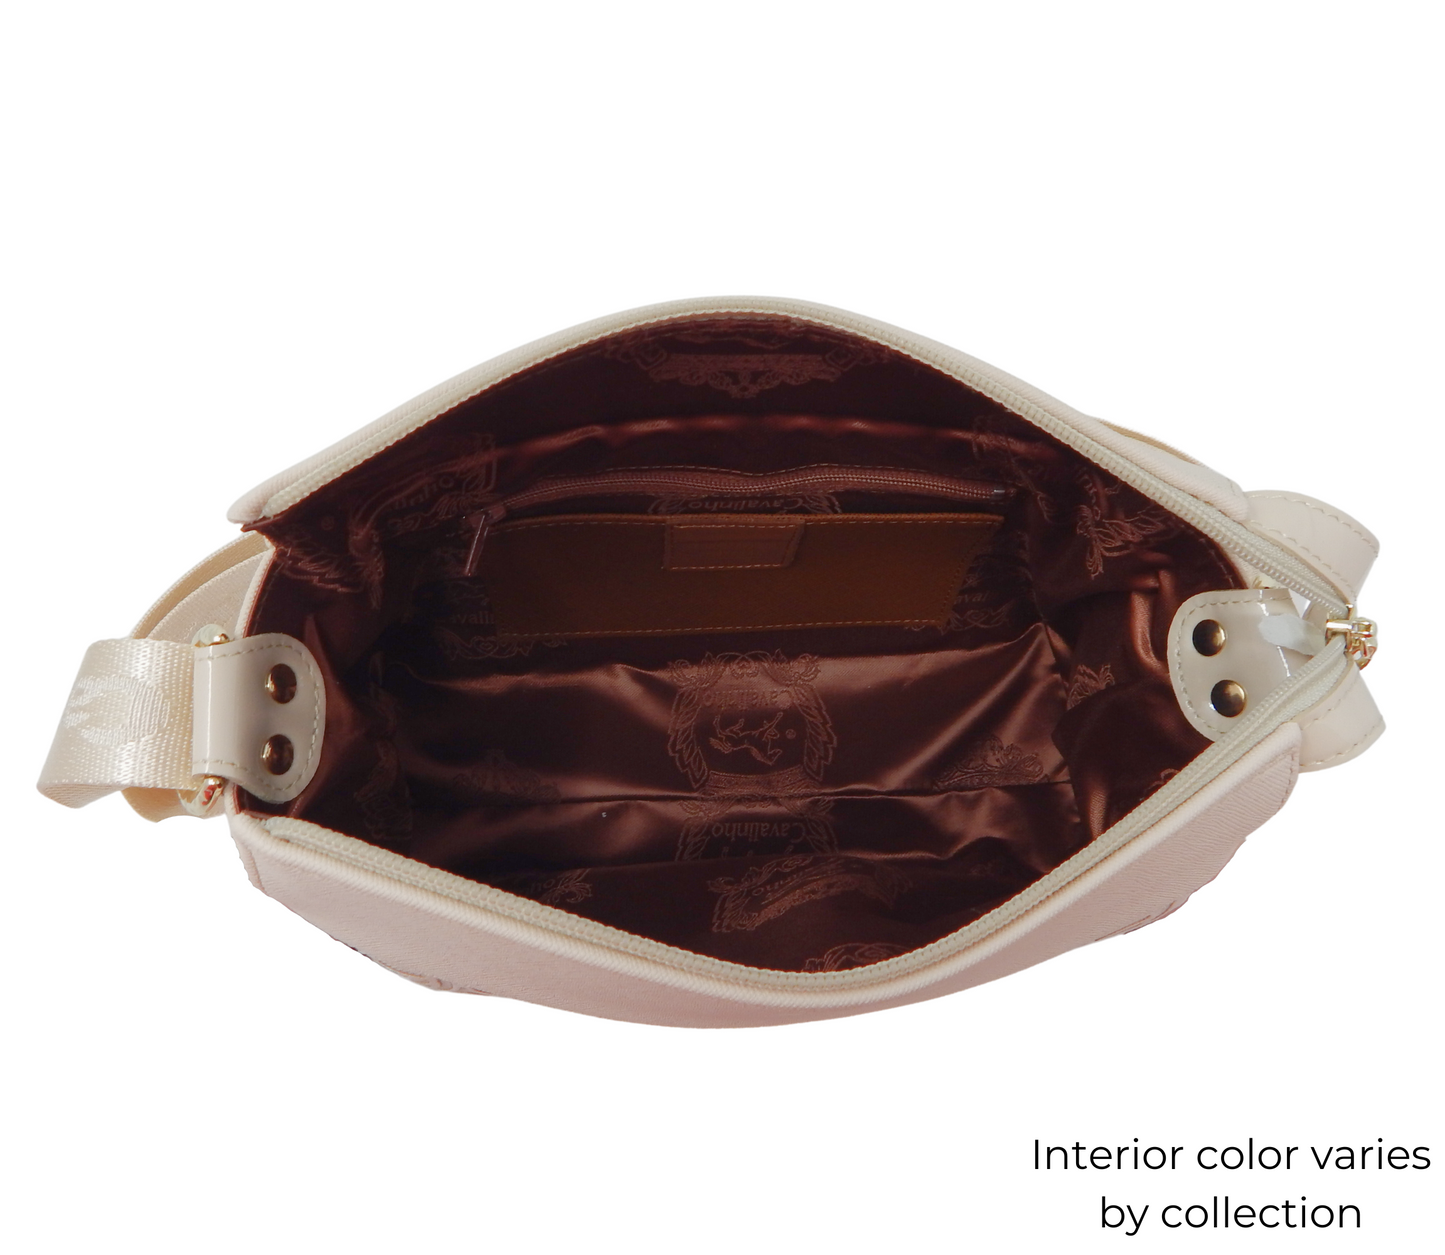 Cavalinho Noble Crossbody Bag - Black and White - 18180344.33-Interior0344.05